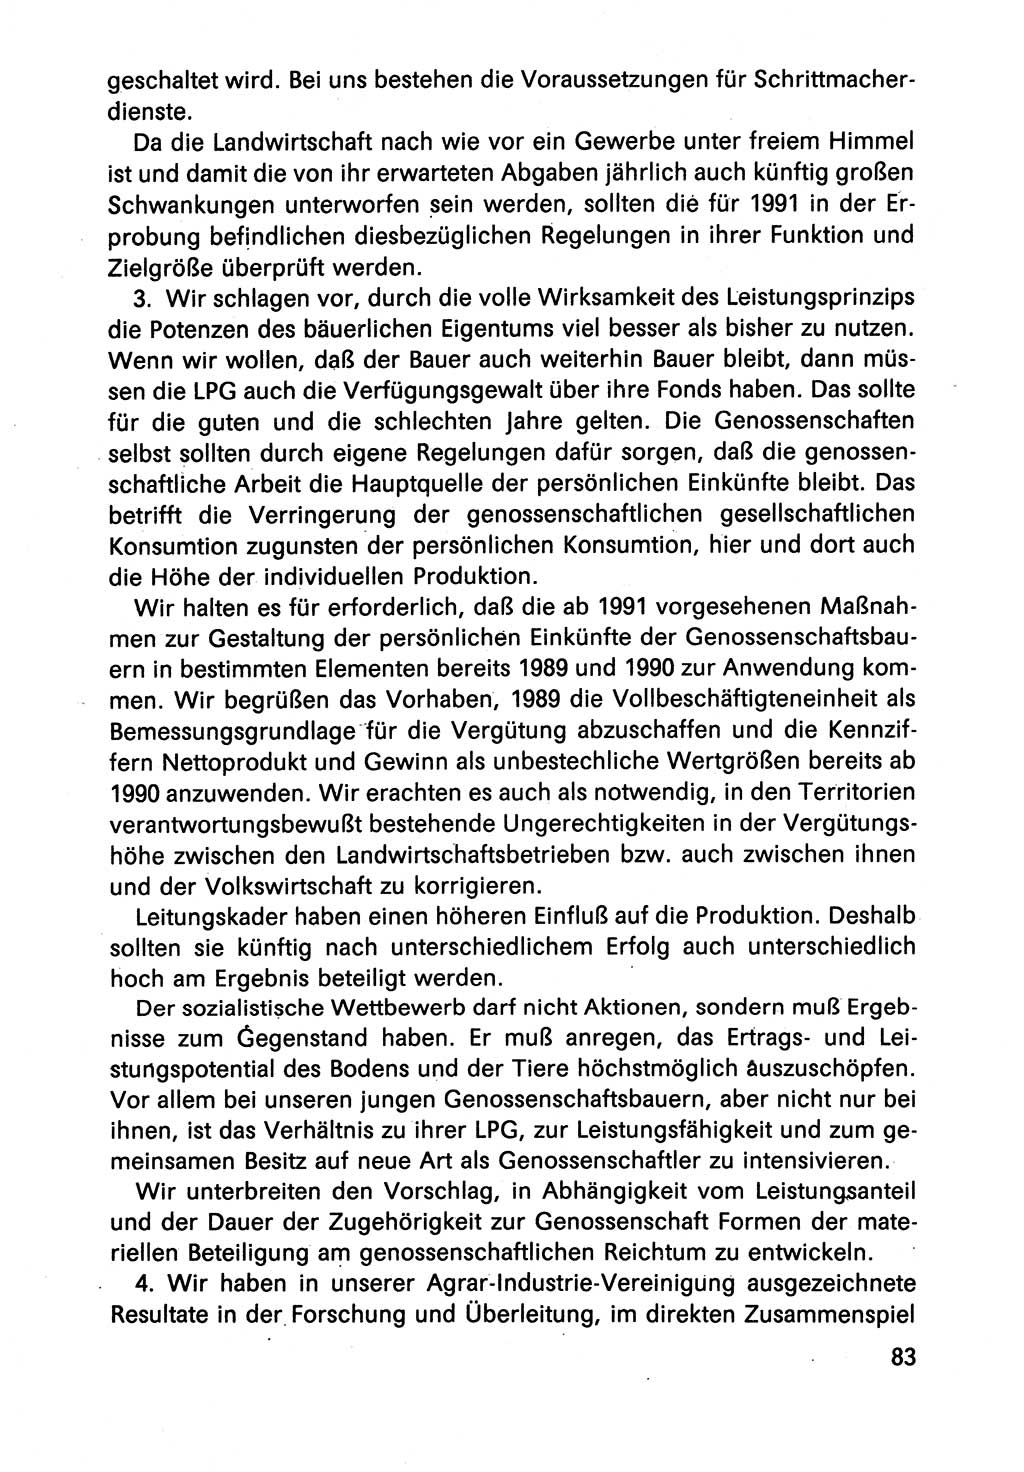 Diskussionsbeiträge, 10. Tagung des ZK (Zentralkomitee) der SED (Sozialistische Einheitspartei Deutschlands) [Deutsche Demokratische Republik (DDR)] 1989, Seite 83 (Disk.-Beitr. 10. Tg. ZK SED DDR 1989, S. 83)